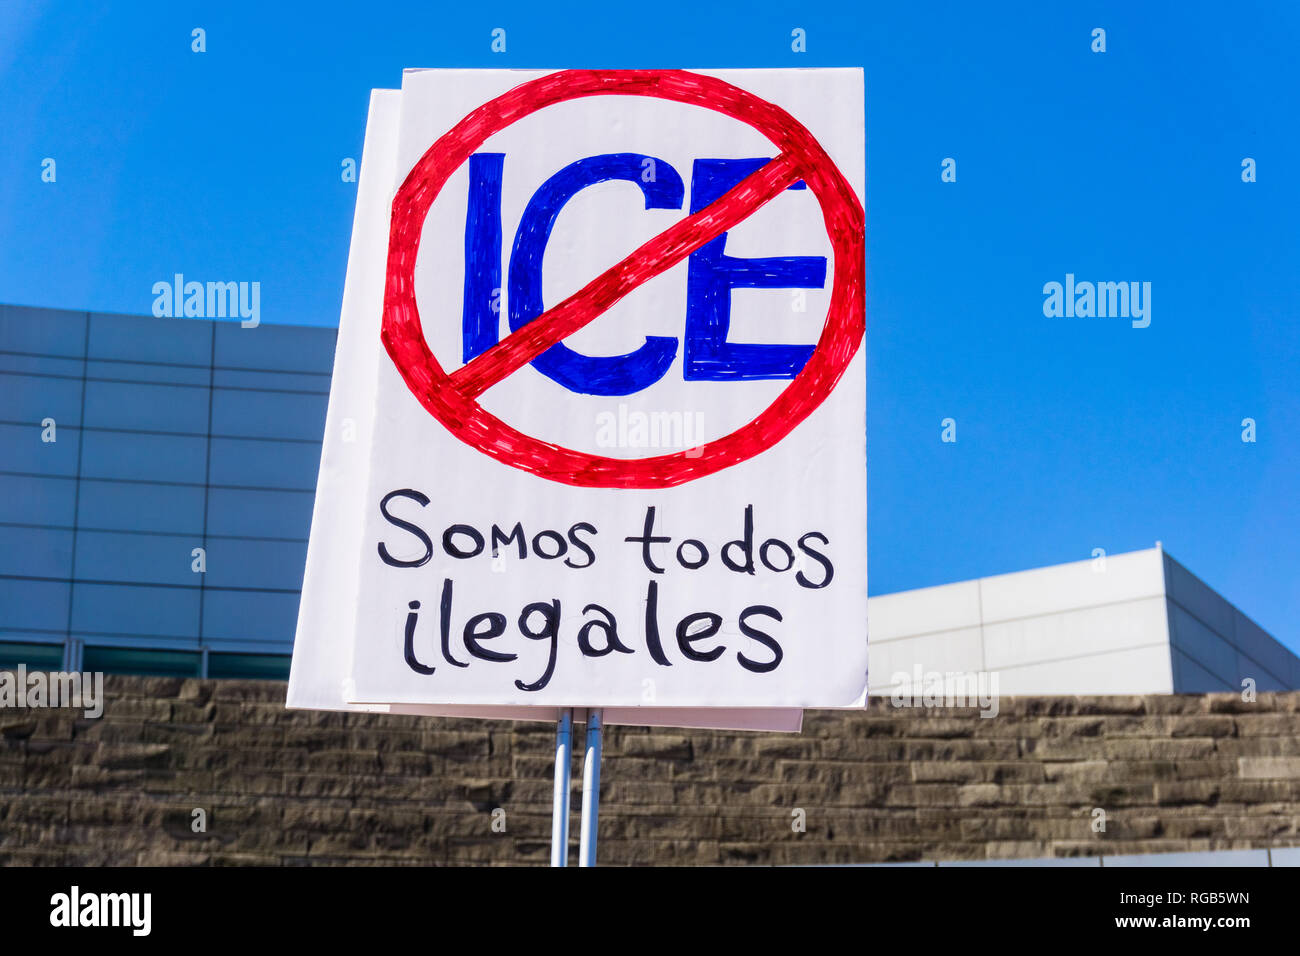 Giugno 30, 2018 San Jose / CA / STATI UNITI D'AMERICA - Segno dicendo in spagnolo "siamo tutti illegale" e chiede la soppressione di ghiaccio, sollevate al 'Famiglie appartengono t Foto Stock